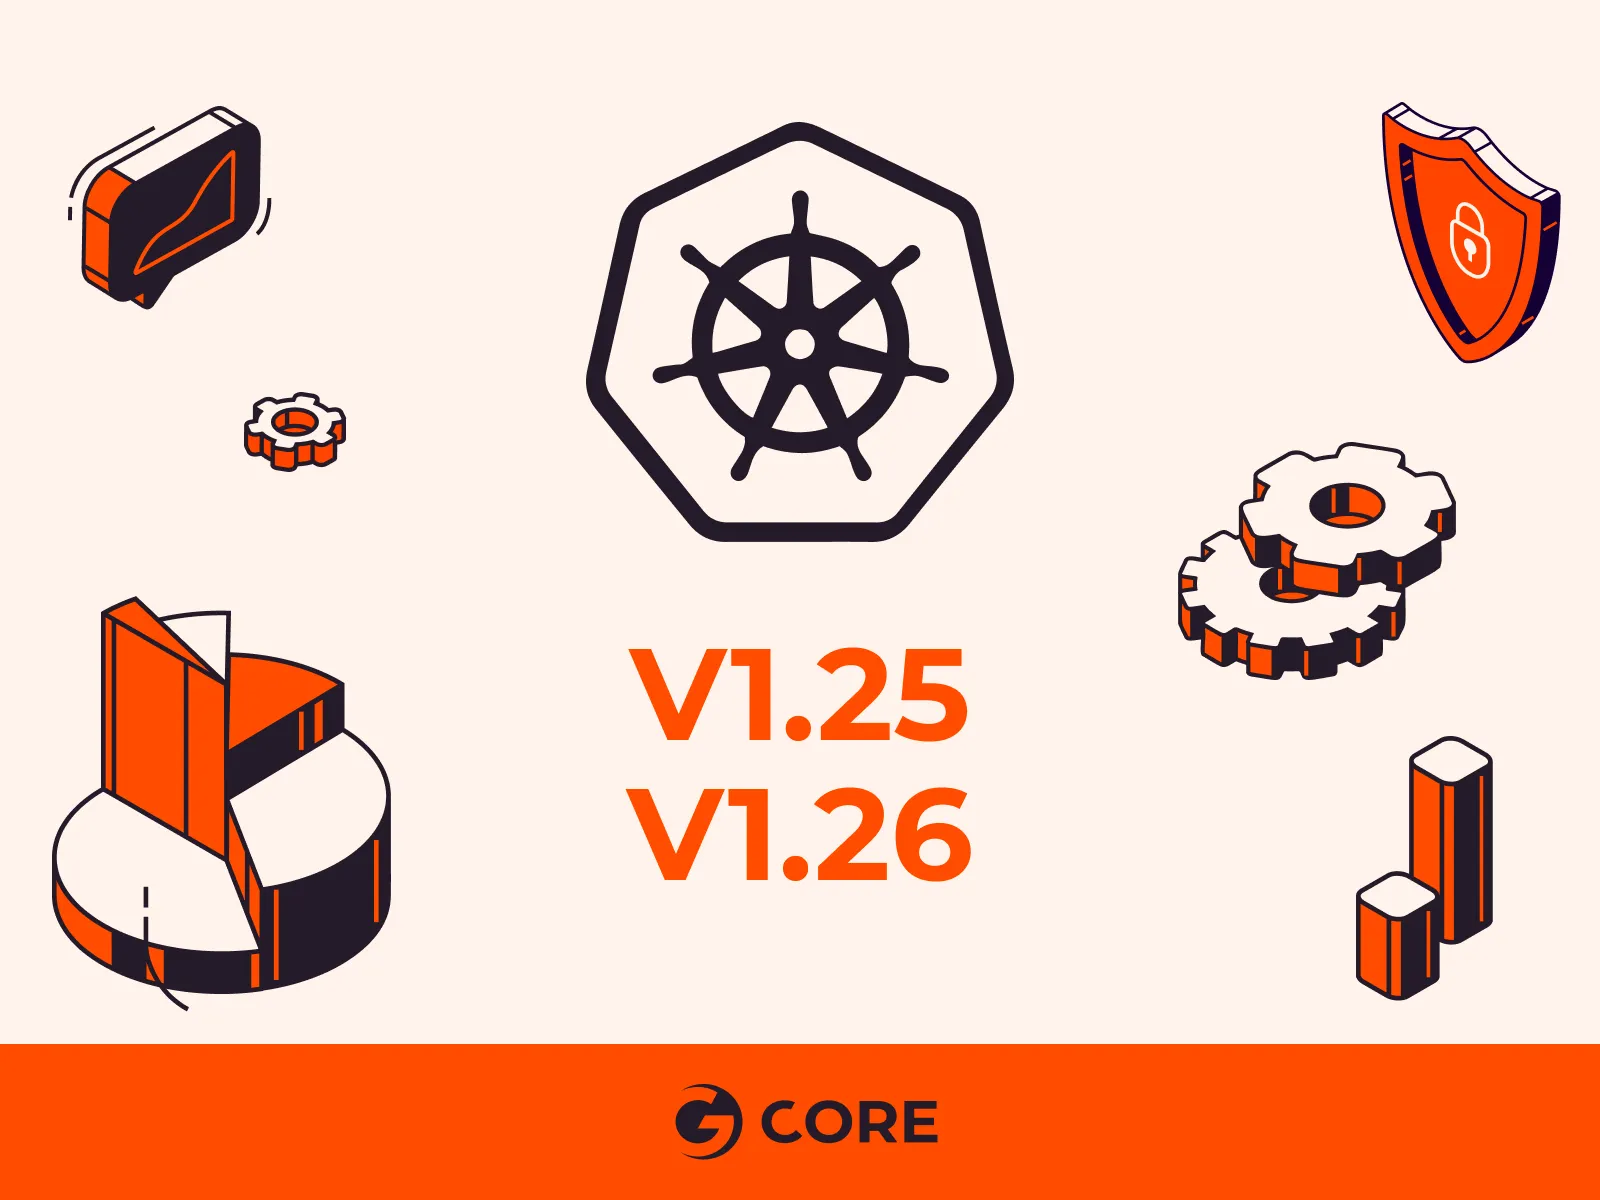 Gcore发布升级版托管Kubernetes平台，支持最新版本Kubernetes 1.25和1.26